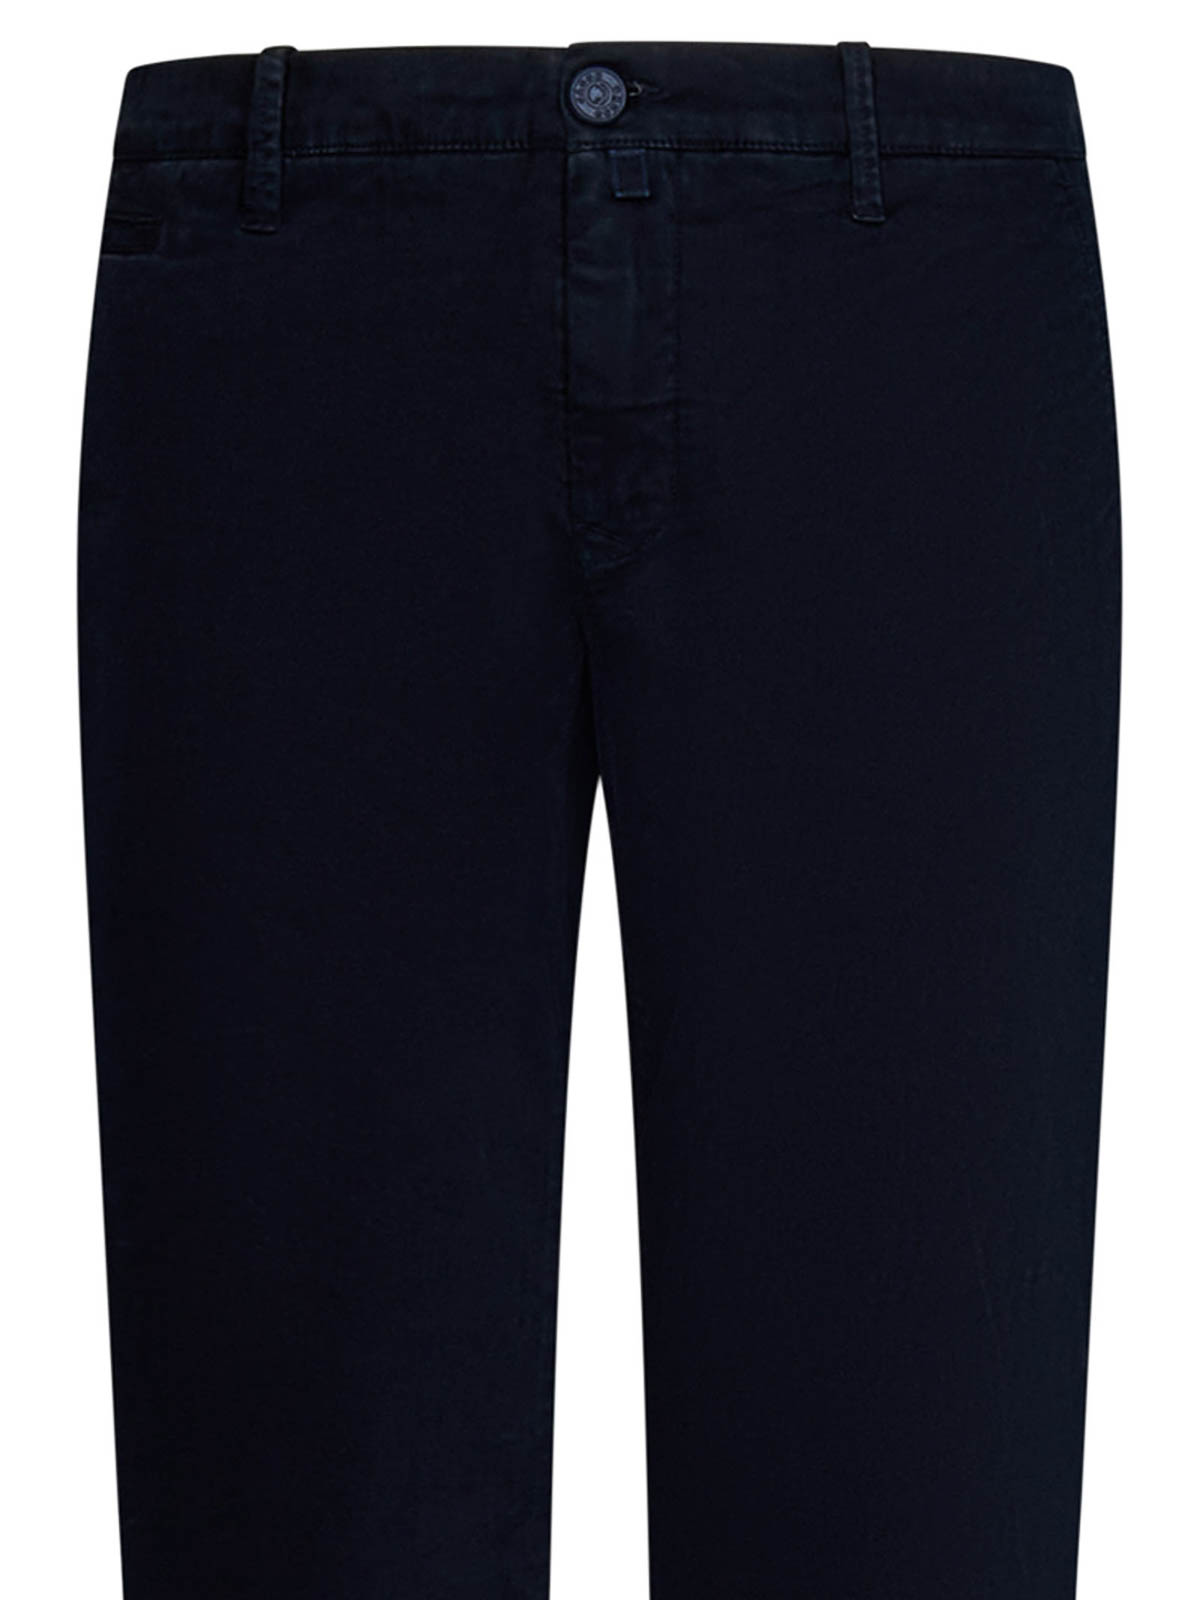 Shop Jacob Cohen Navy Blue Stretch Cotton Trousers